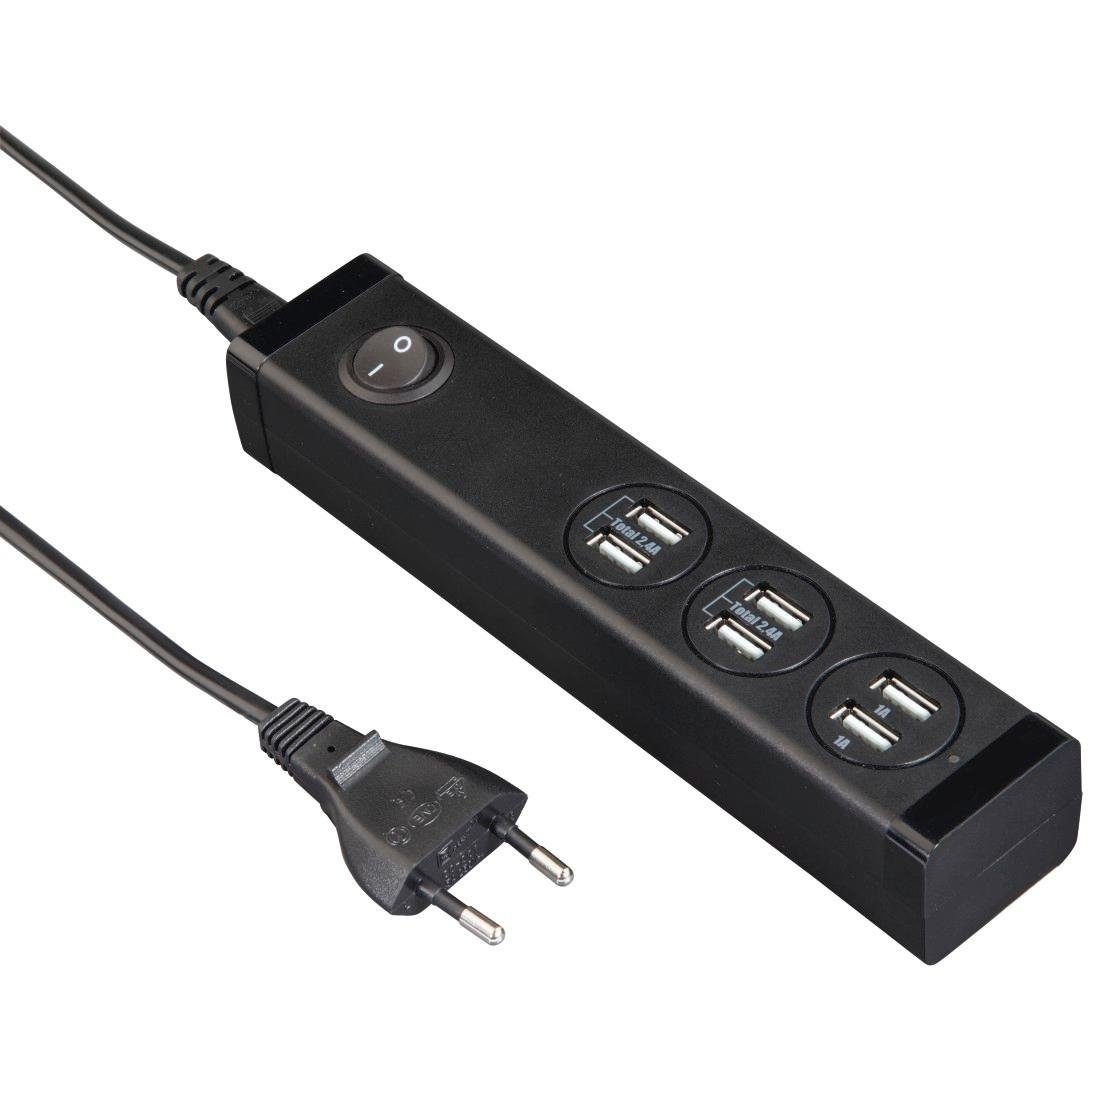 Hama »USB Ladestation 6-Port mit Schalter für Handy, Tablet etc. Multi  Ladegerät für Steckdose« Ladestation online kaufen | OTTO